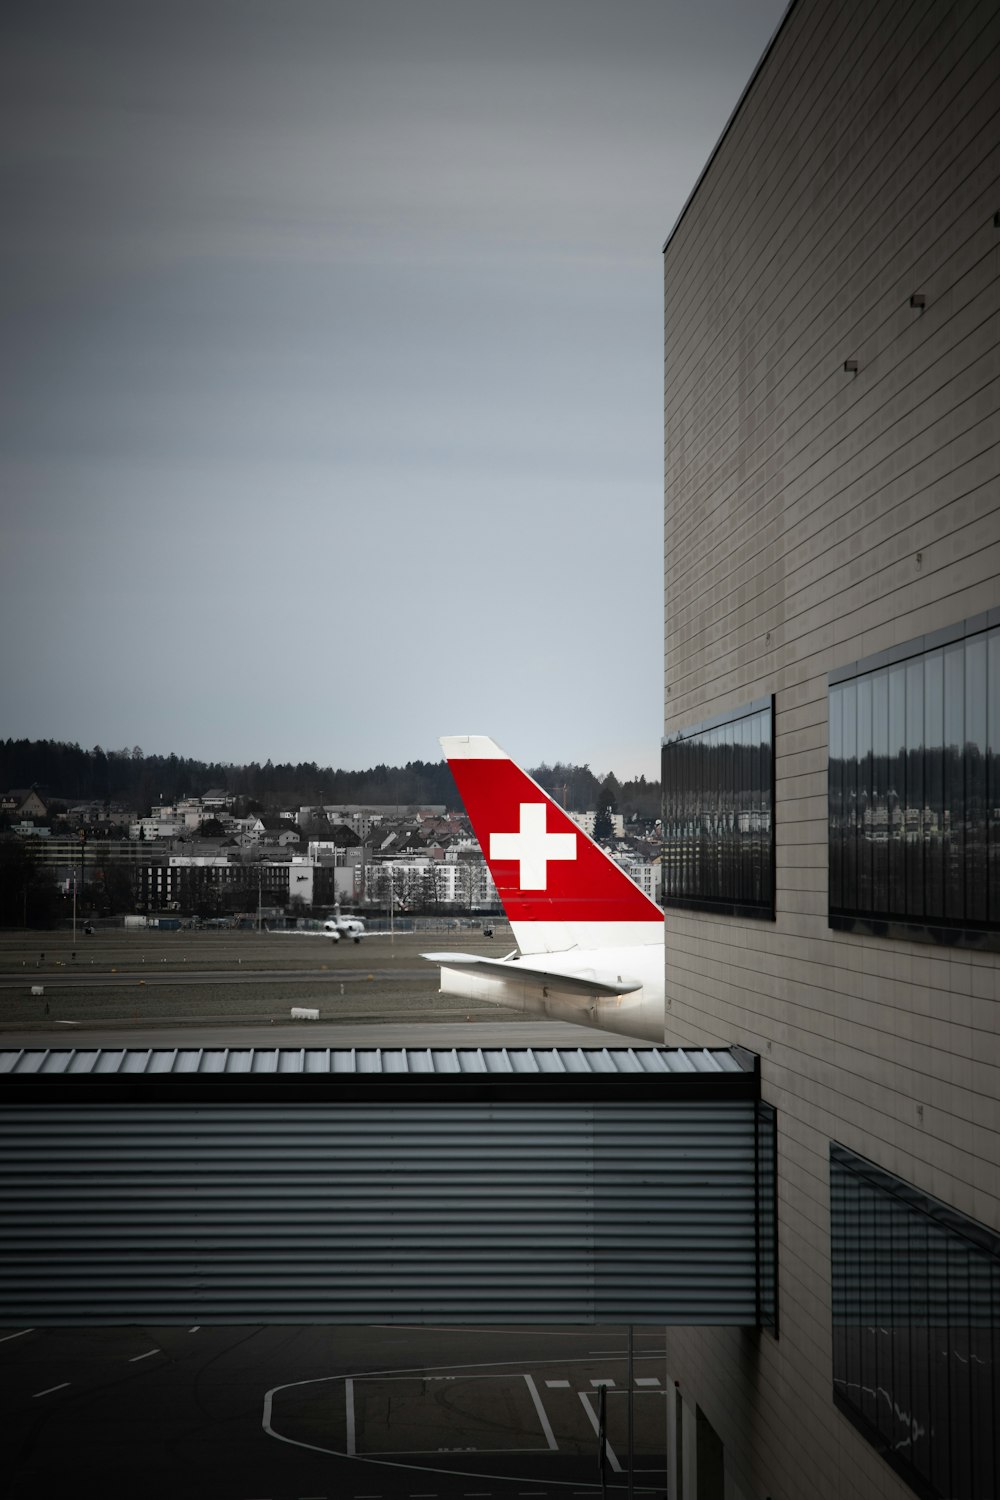 aeroplano bianco e rosso sull'aeroporto durante il giorno